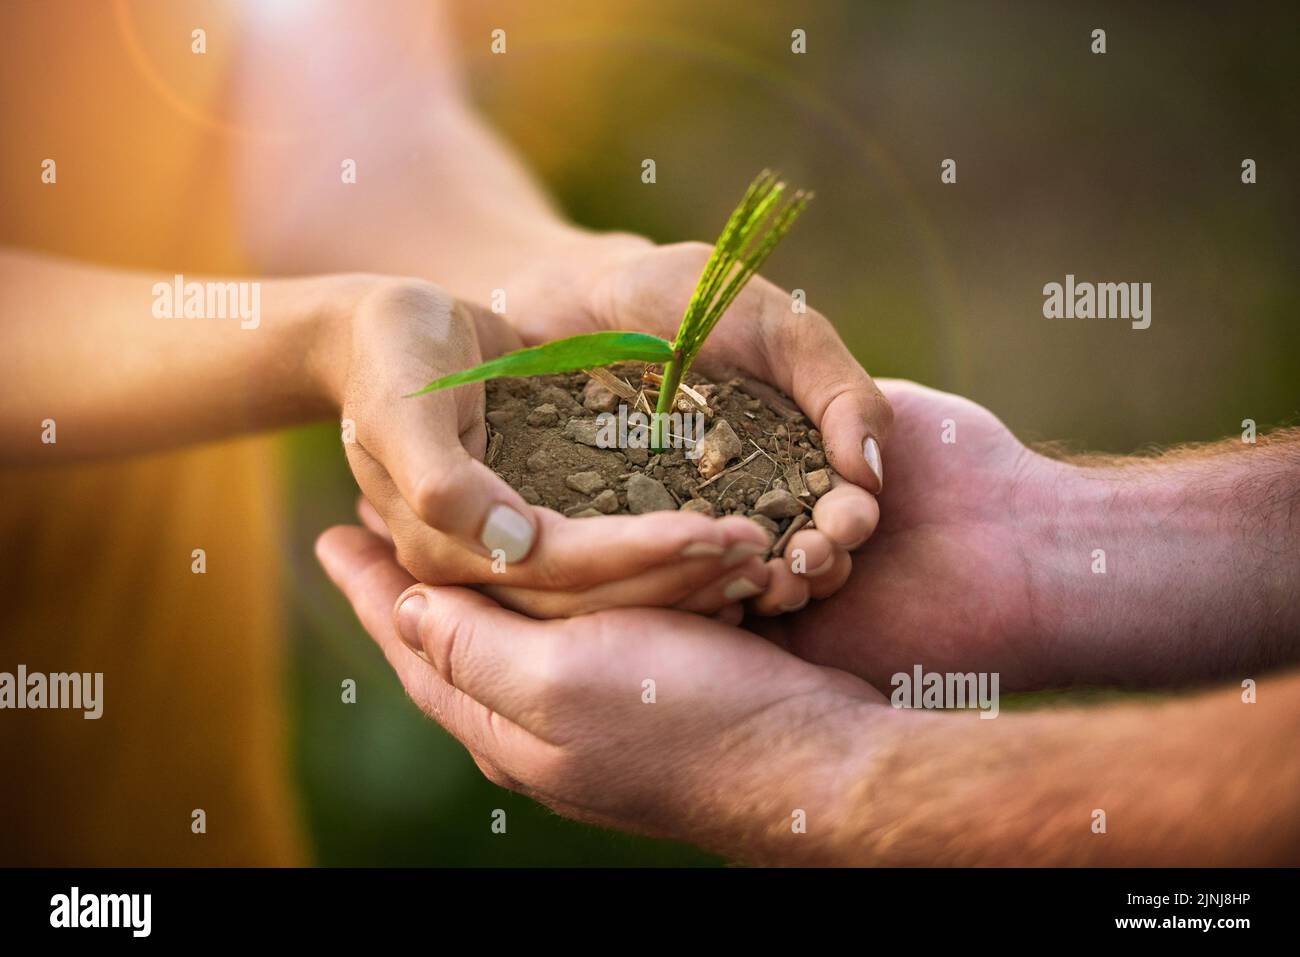 Fürsorgliche Menschen, die Samen, Pflanzen und Böden in den Händen halten, um das Umweltbewusstsein zu schützen oder eine nachhaltige Entwicklung zu erreichen. Eco-Partner Stockfoto